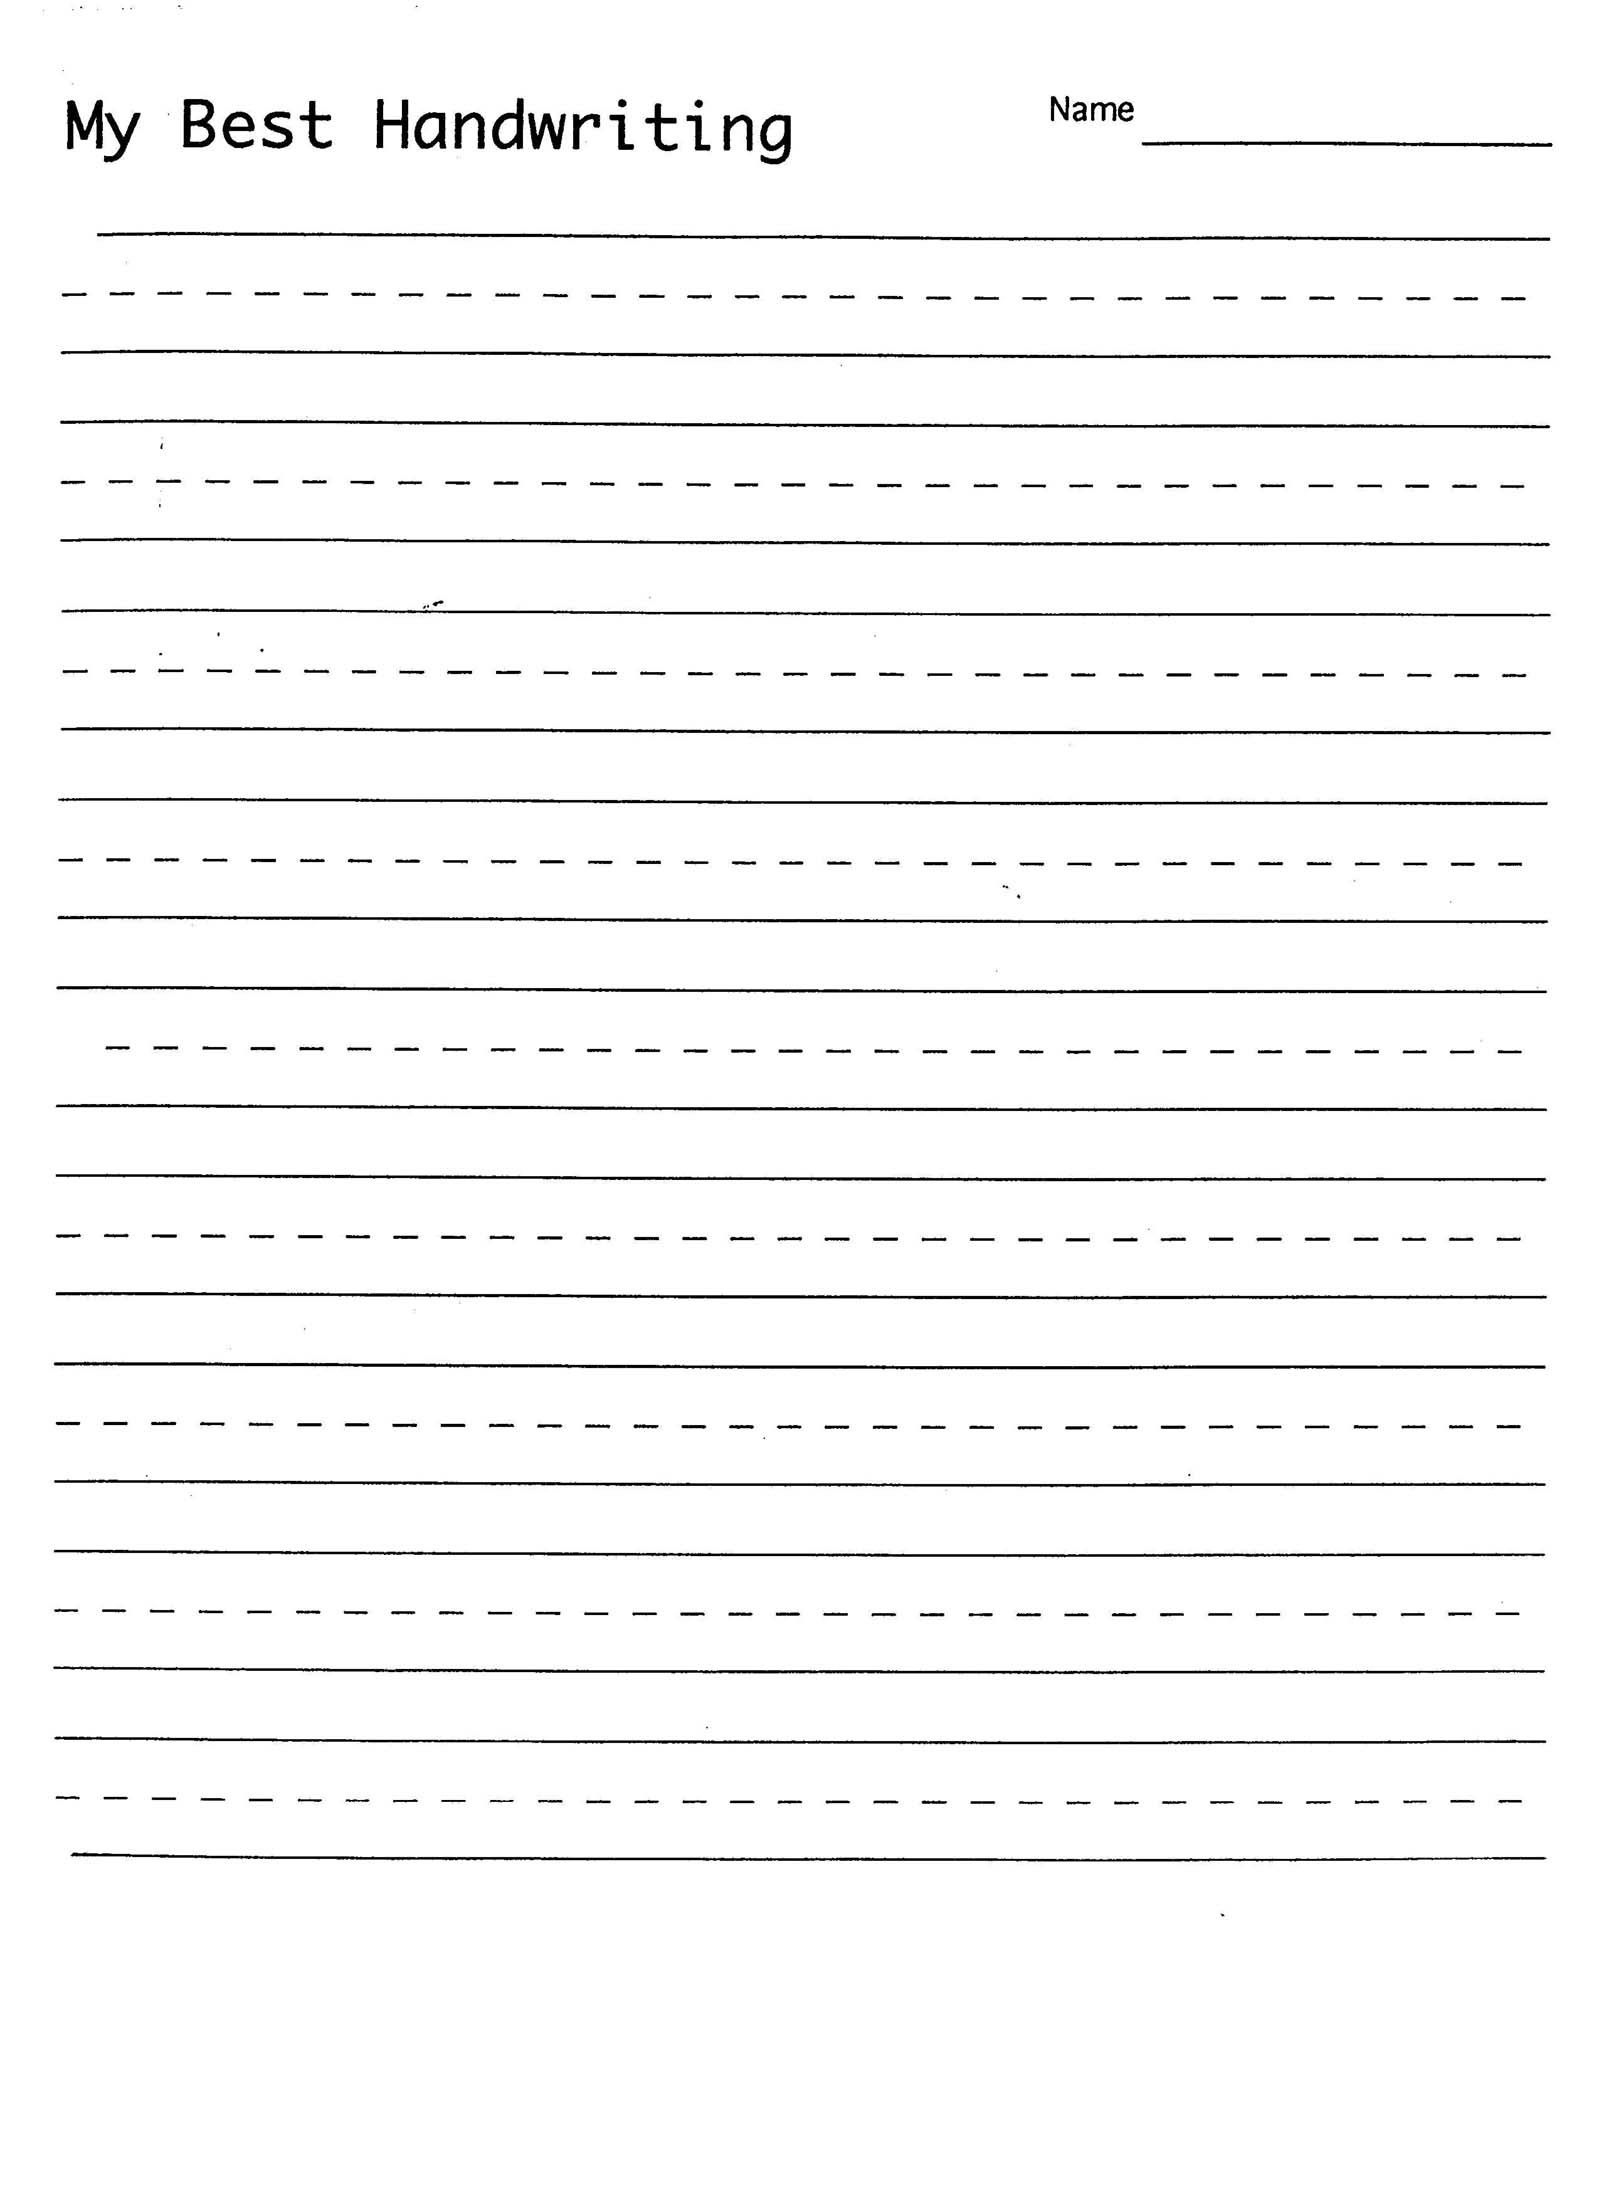 handwriting-sheets-blank-writing-worksheets